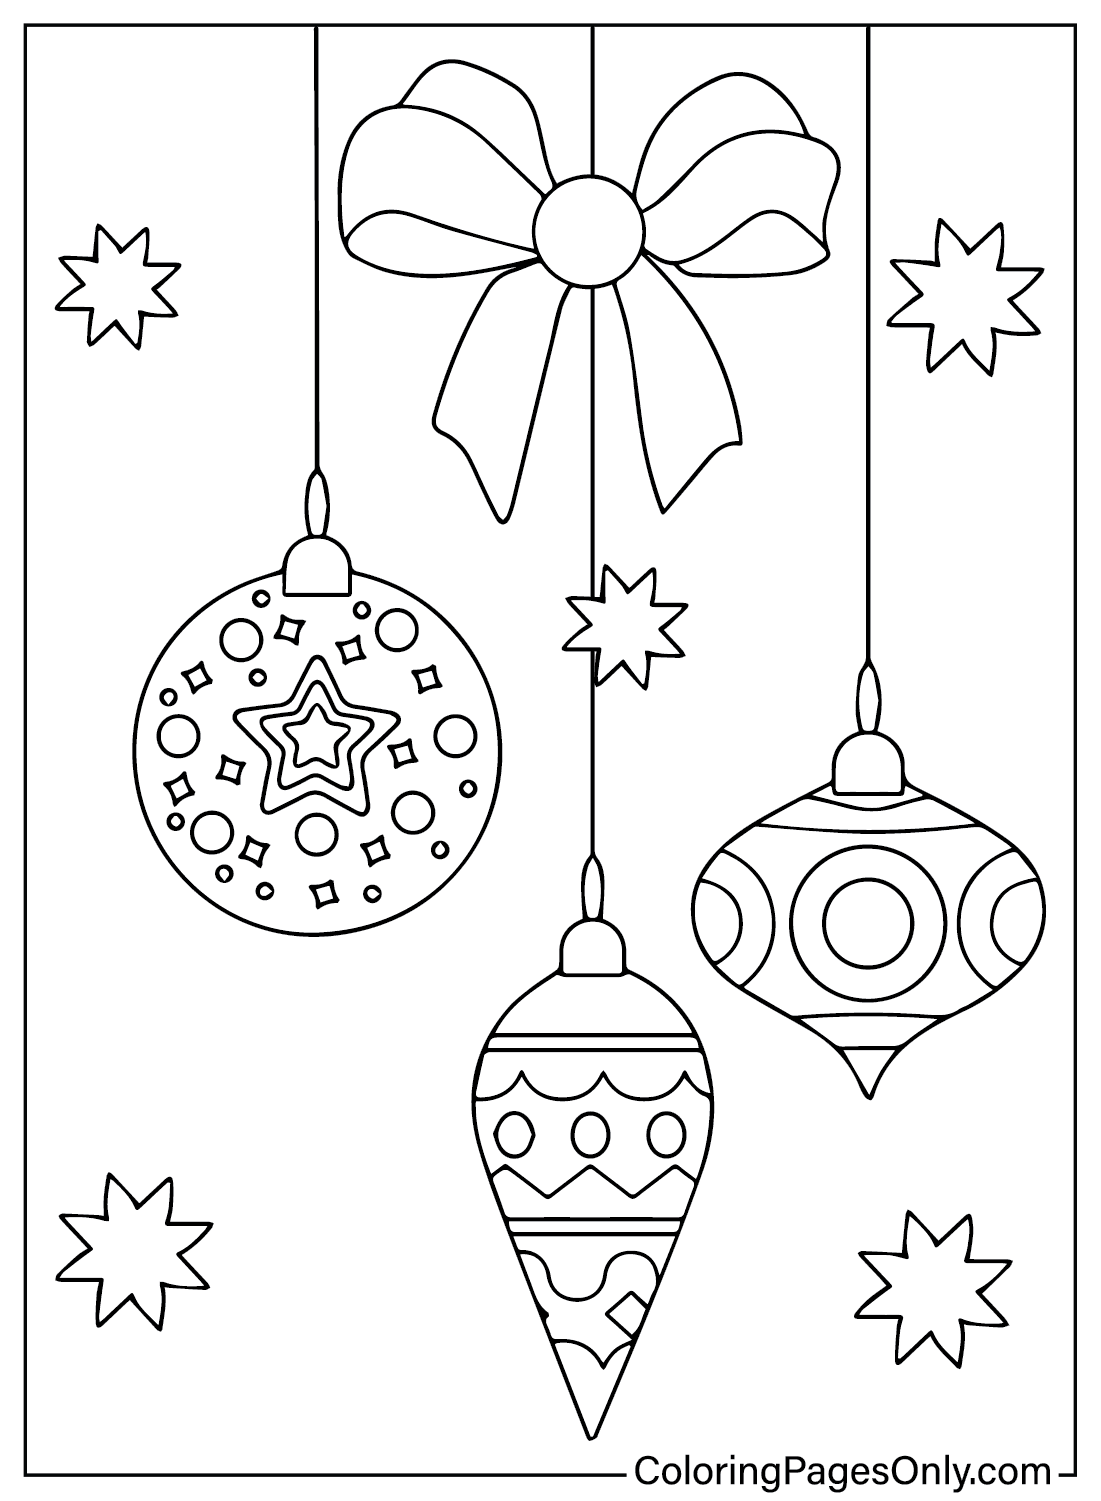 Página para colorear de adornos navideños de Adornos navideños